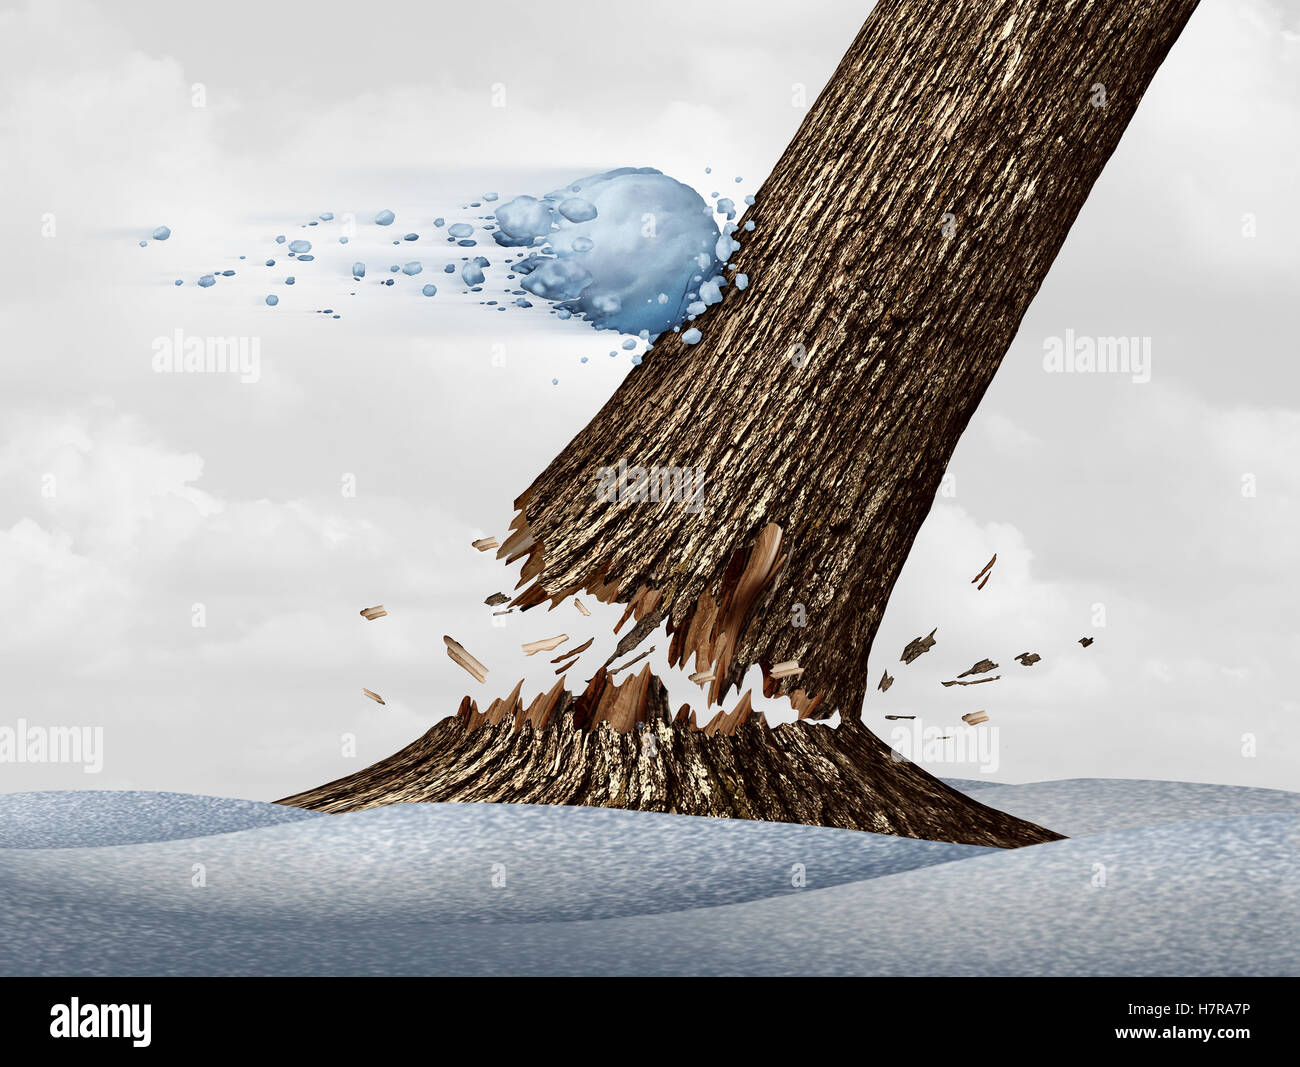 Winter Aufregung Konzept als eine Beschleunigung fliegenden Schneeball Kollision mit einen Baum und bricht den Stamm als eine lustige Saison Schnee Aktivitätssymbol mit 3D Abbildung Elemente. Stockfoto